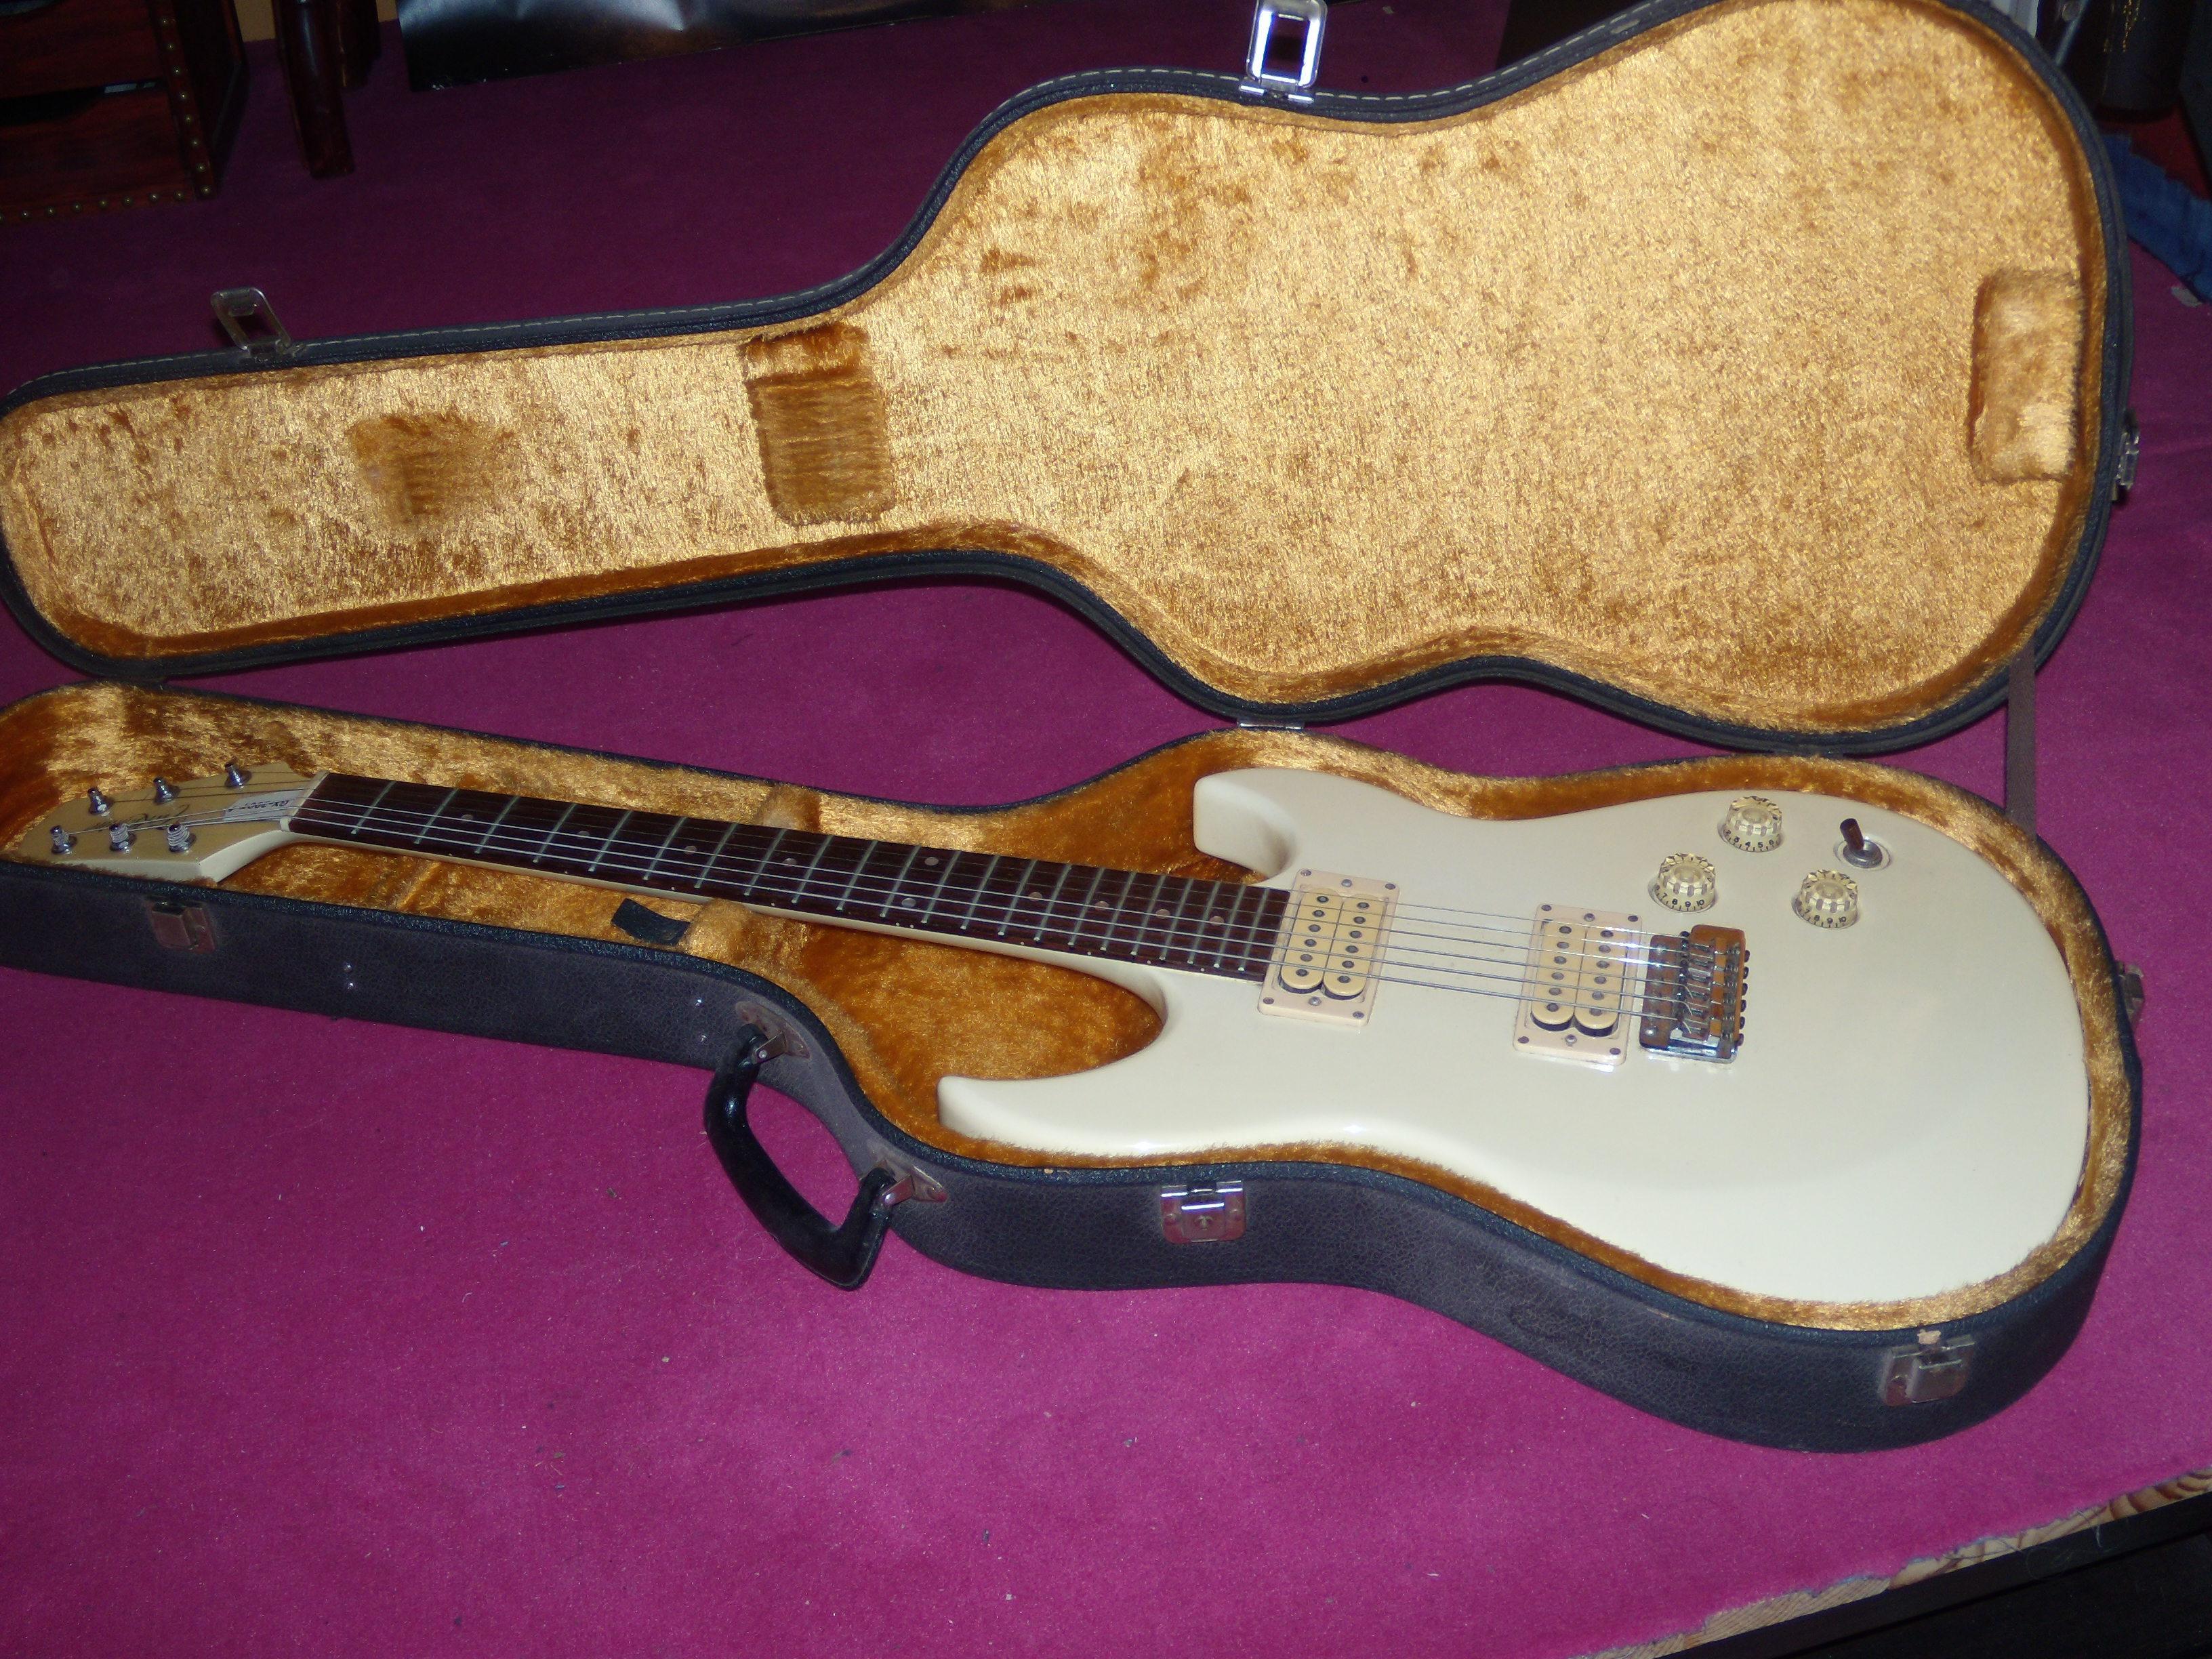 troc de troc guitare takamine gx-200t vintage années 80' image 1